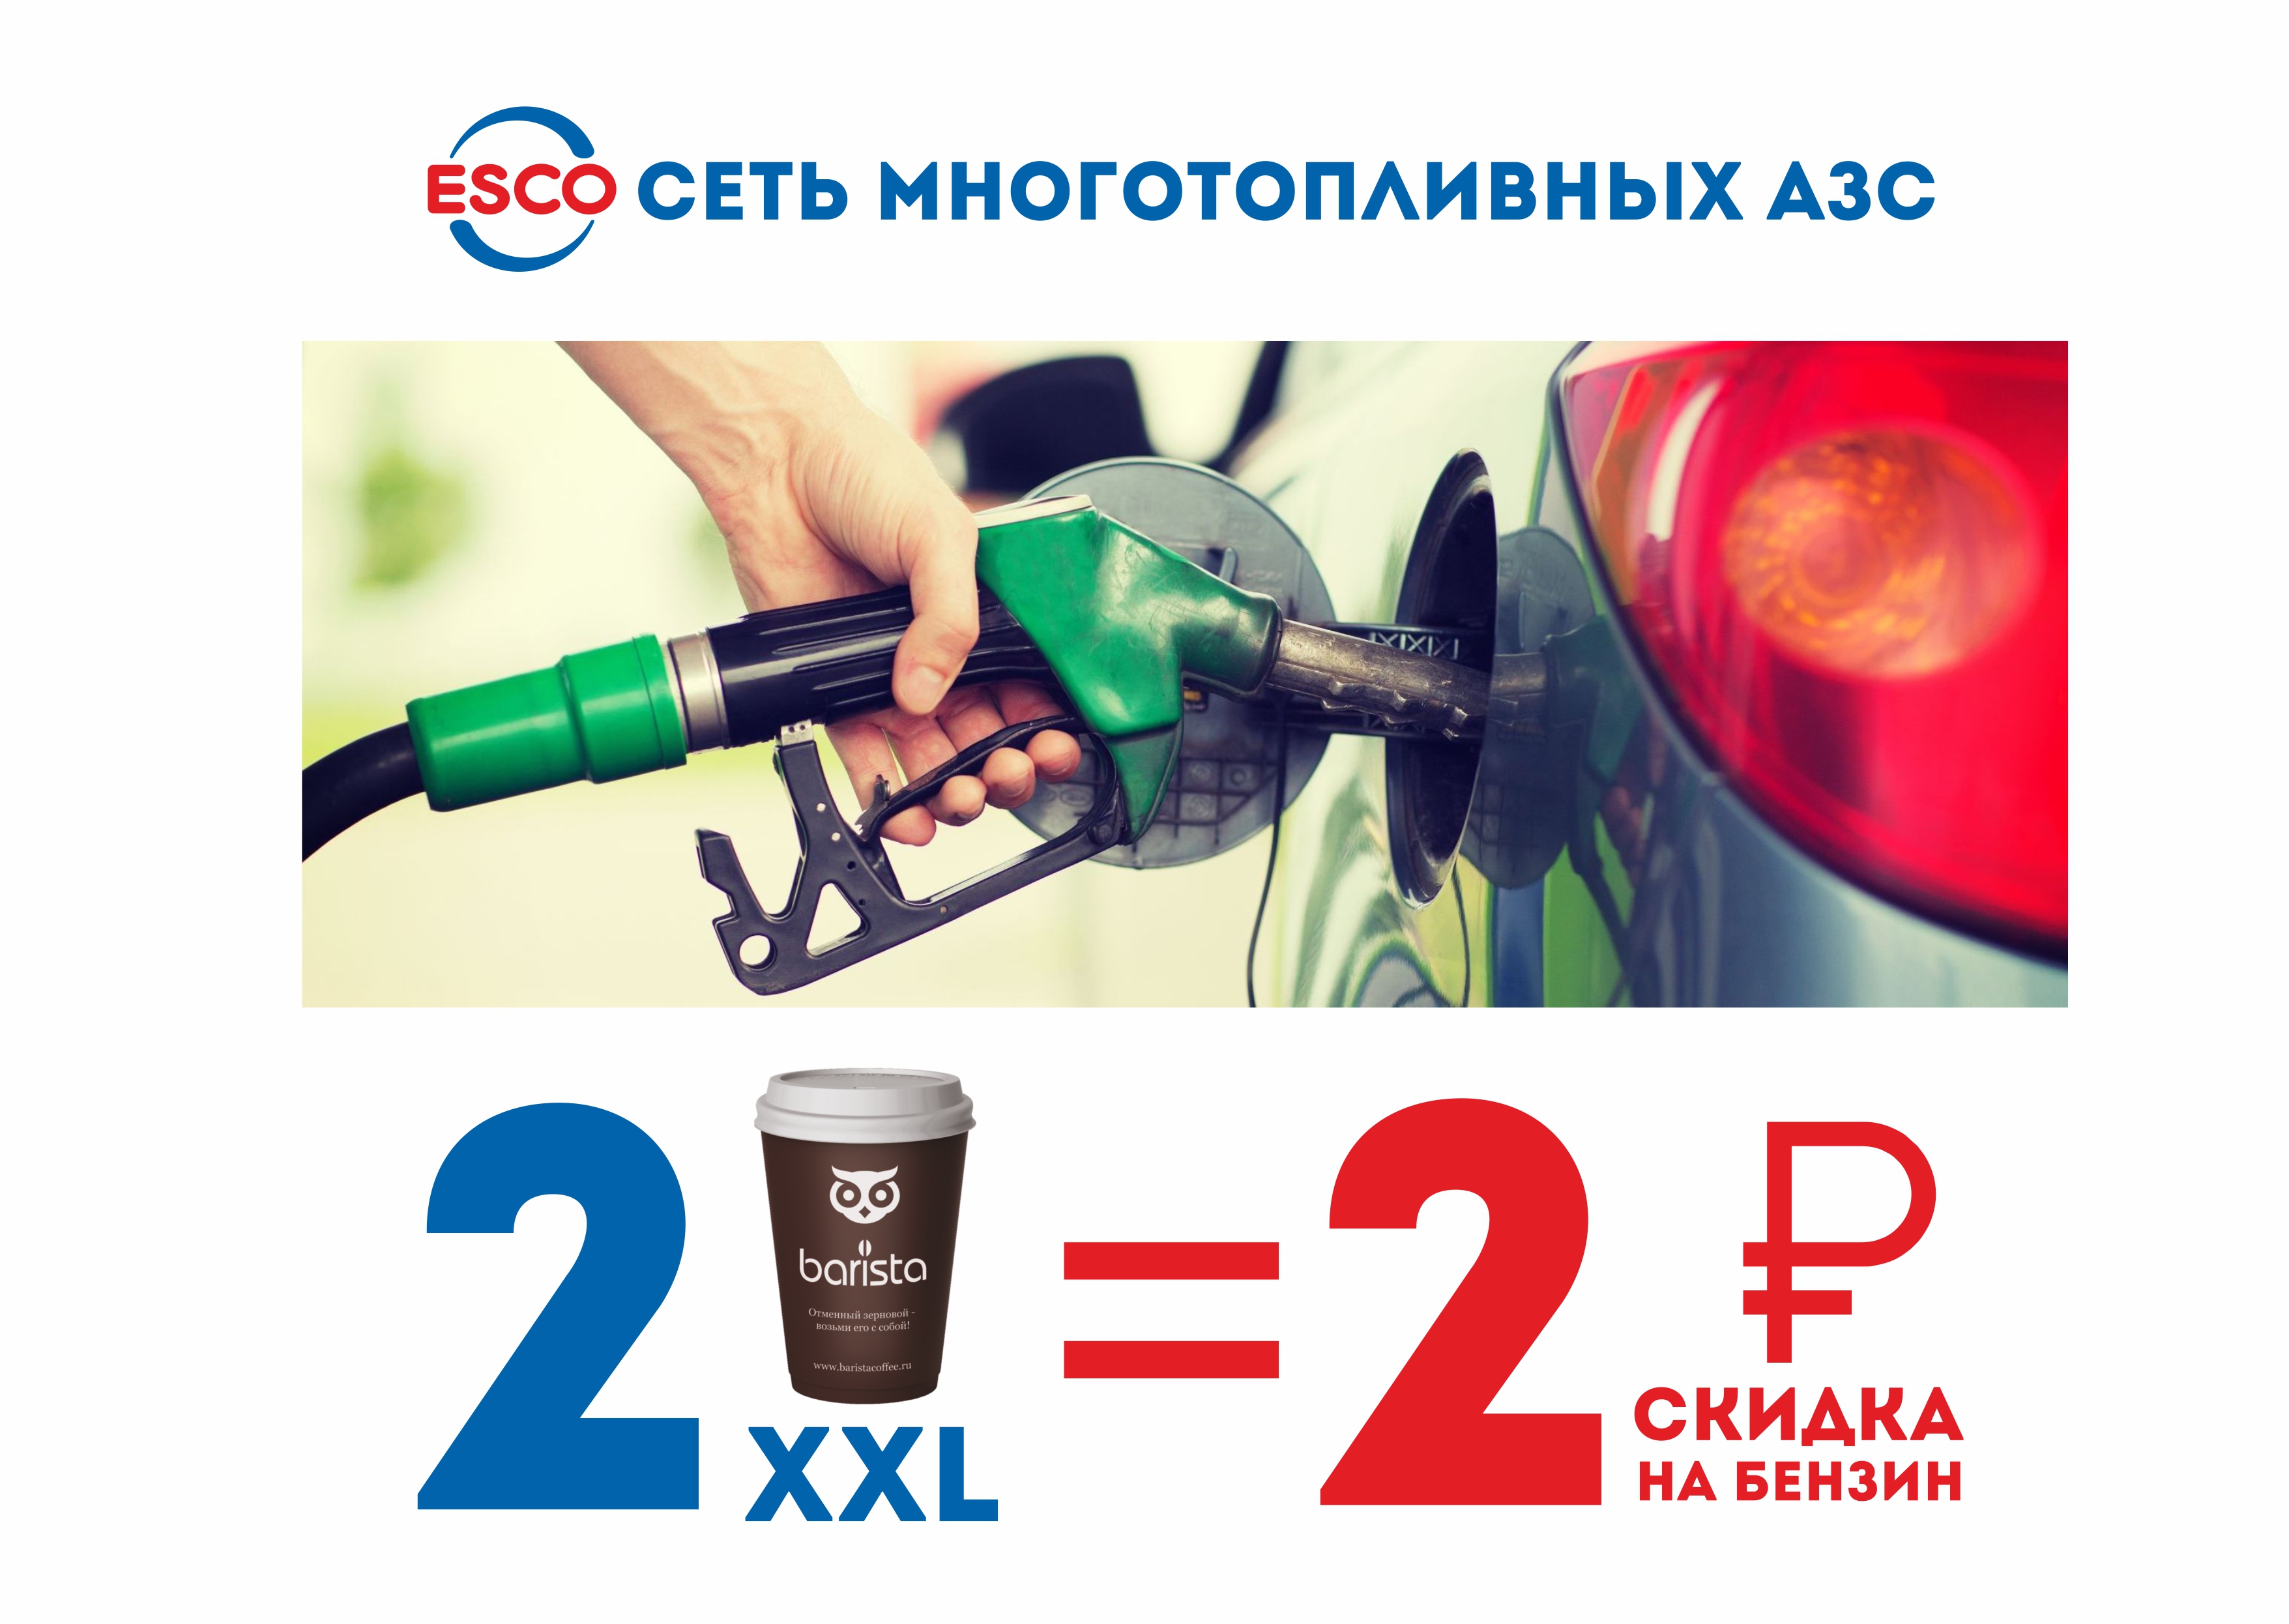 2 кофе  = 2 рубля скидка на бензин